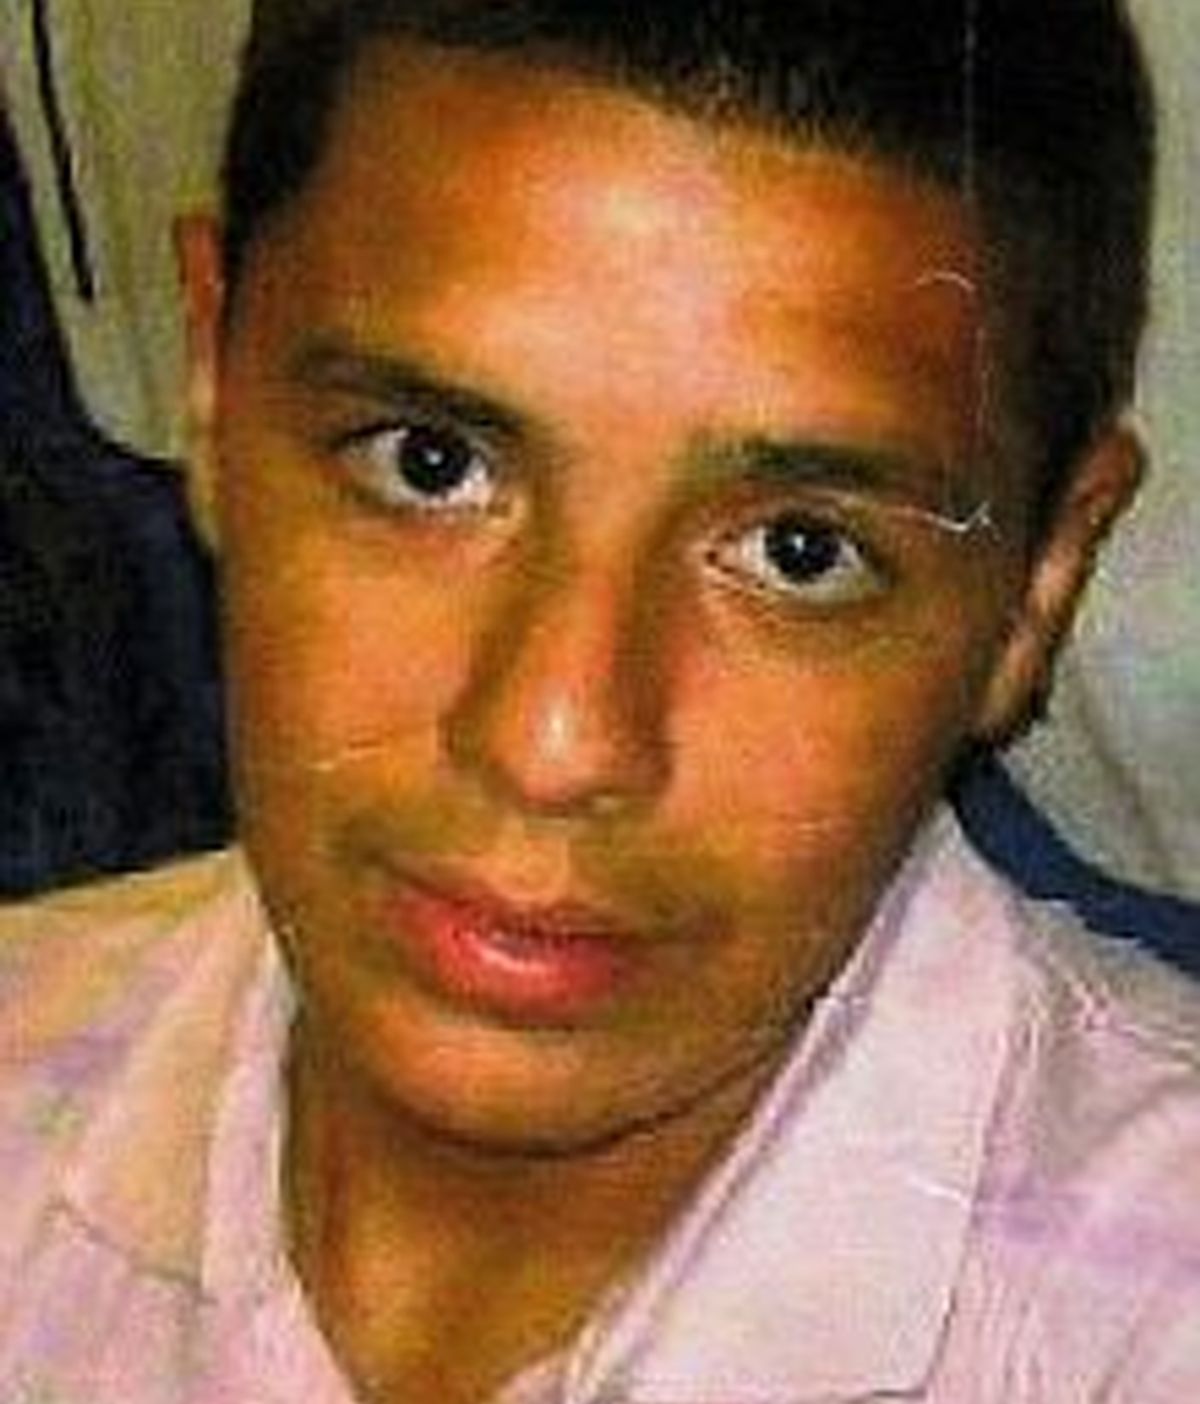 Sofyen Belamouadden de 15 años fue asesinado por una pandilla de adolescentes en el metro de Londres.